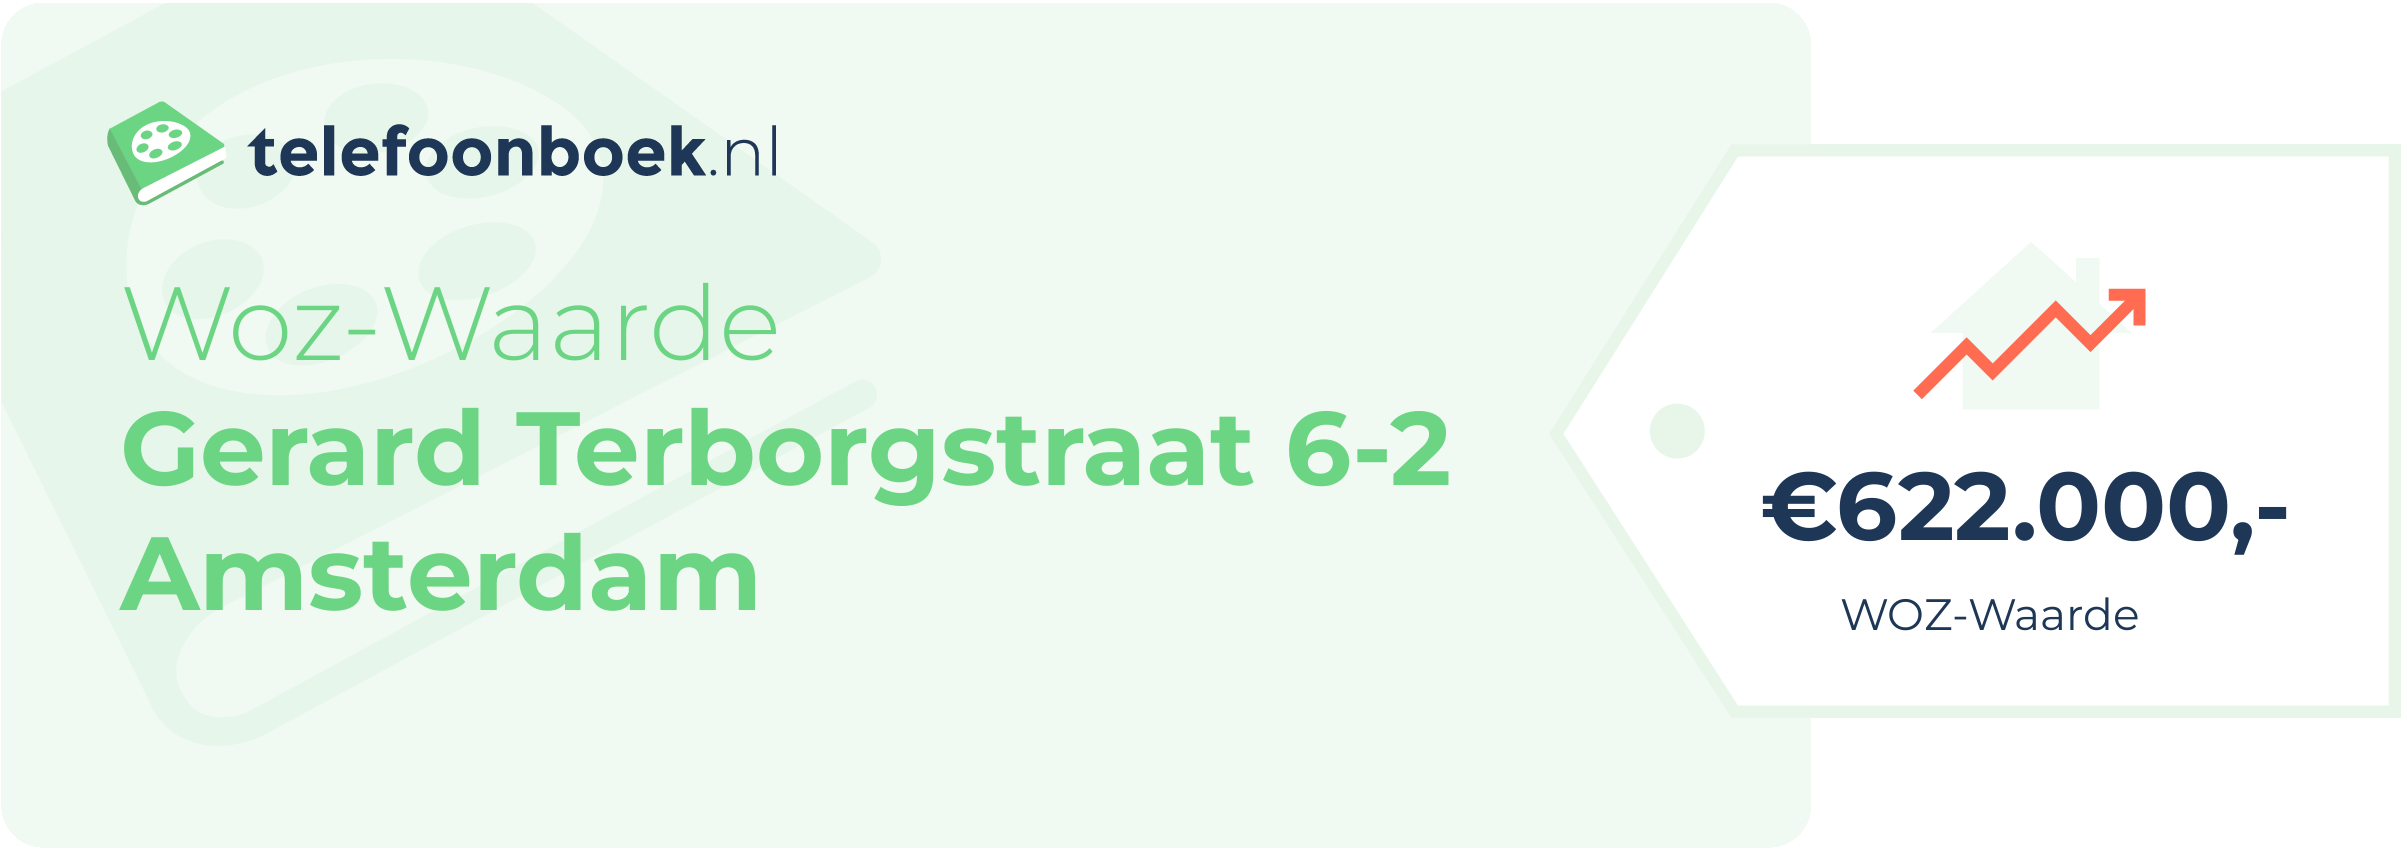 WOZ-waarde Gerard Terborgstraat 6-2 Amsterdam